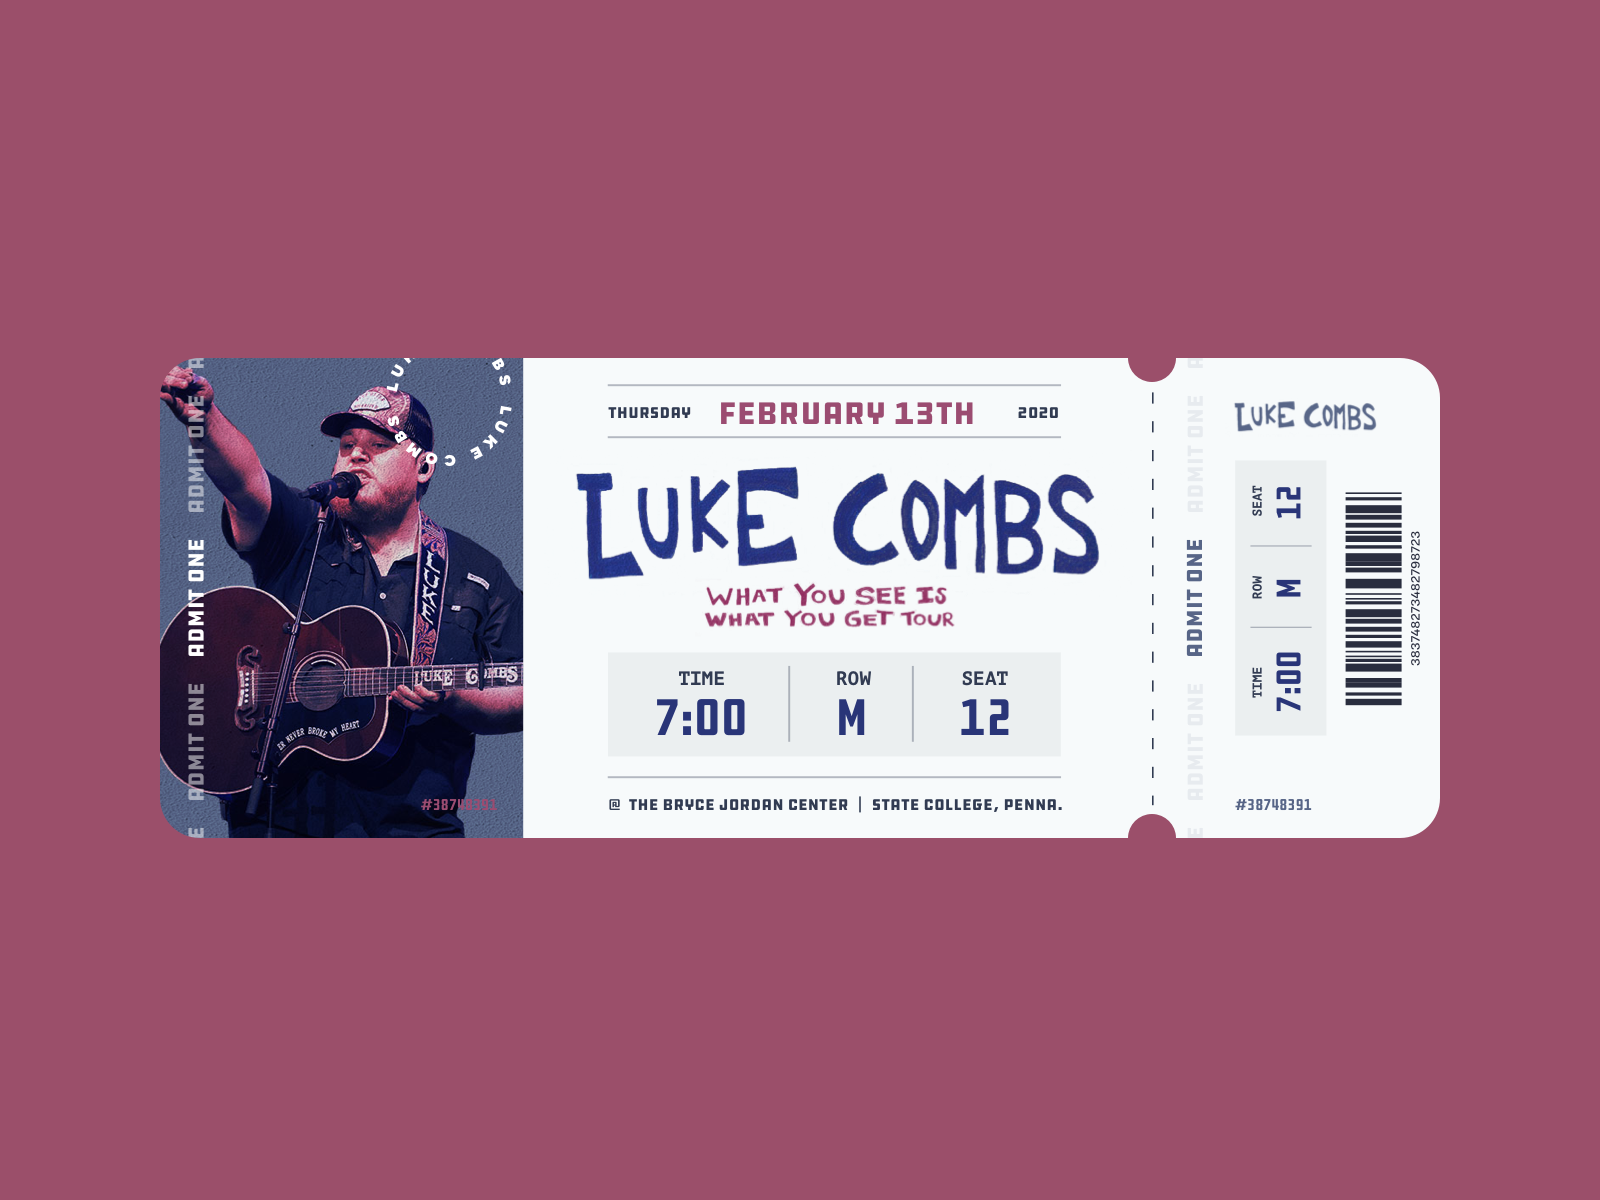 Luke Combs Ticket Stub by Kaci Kwiatek on Dribbble